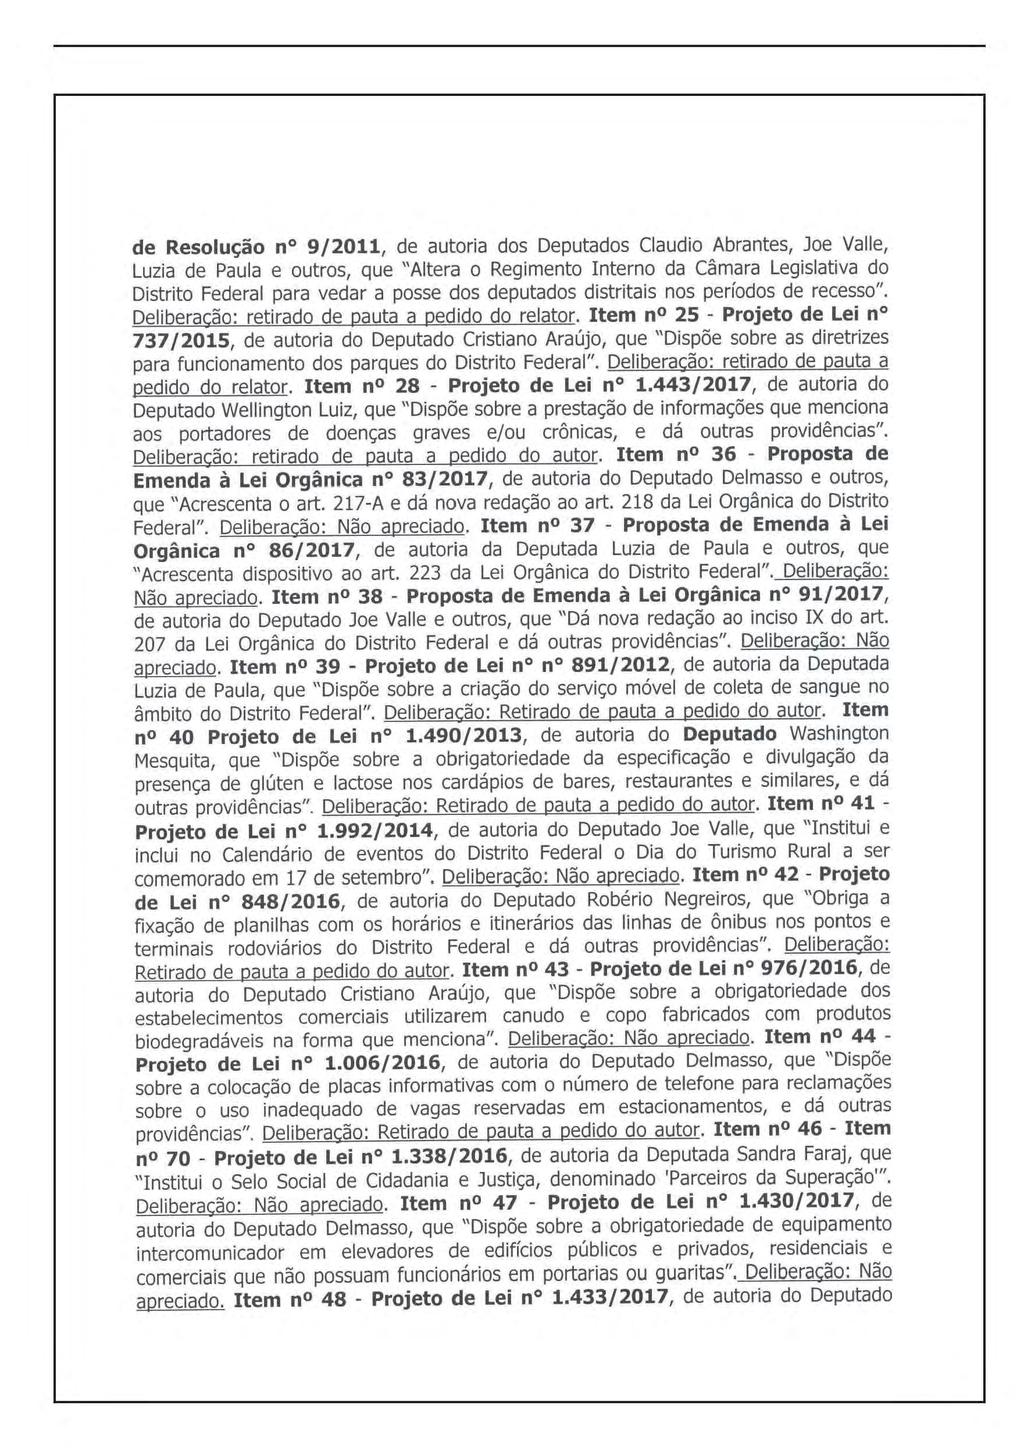 Página 9 de Resolução n 9/2011, de autoria dos Deputados Claudio Abrantes, Joe Valle, Luzia de Paula e outros, que "Altera o Regimento Interno da Câmara Legislativa do Distrito Federal para vedar a